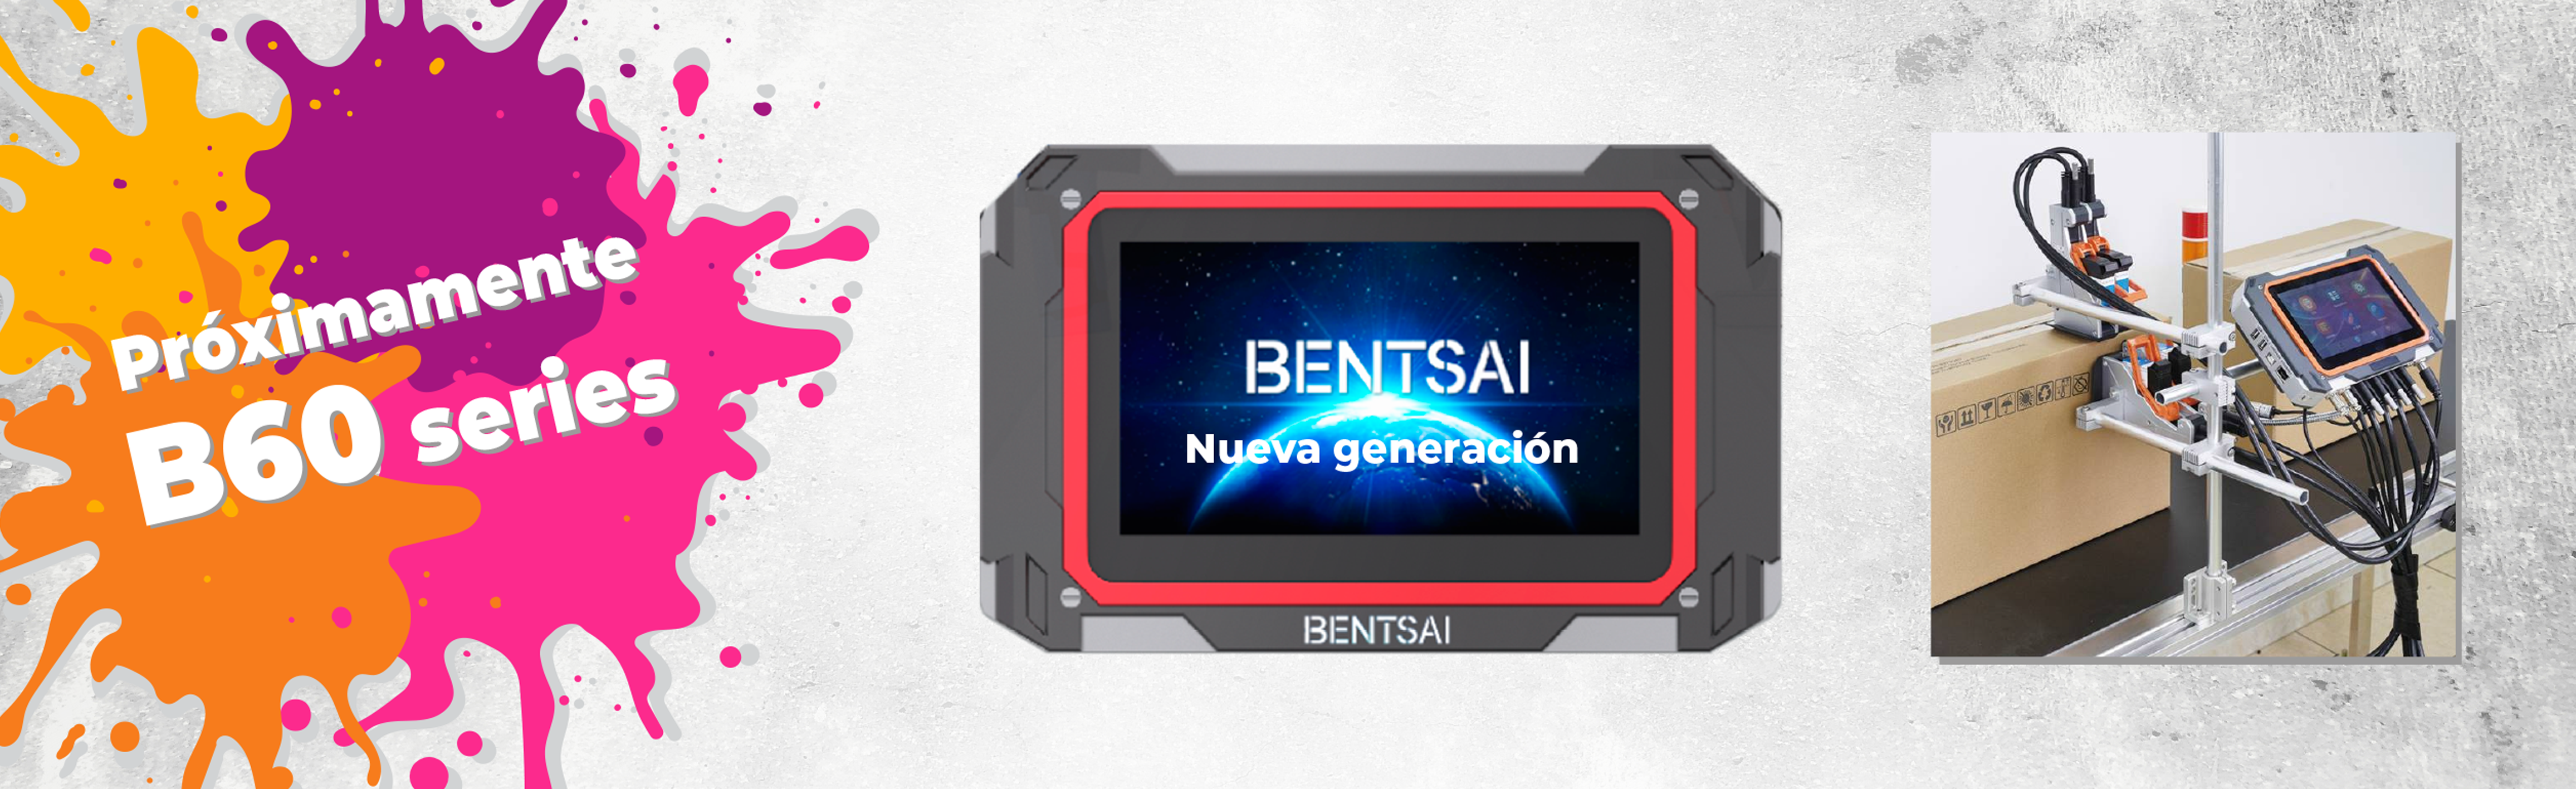 Próximo lanzamiento BENTSAI B60 series